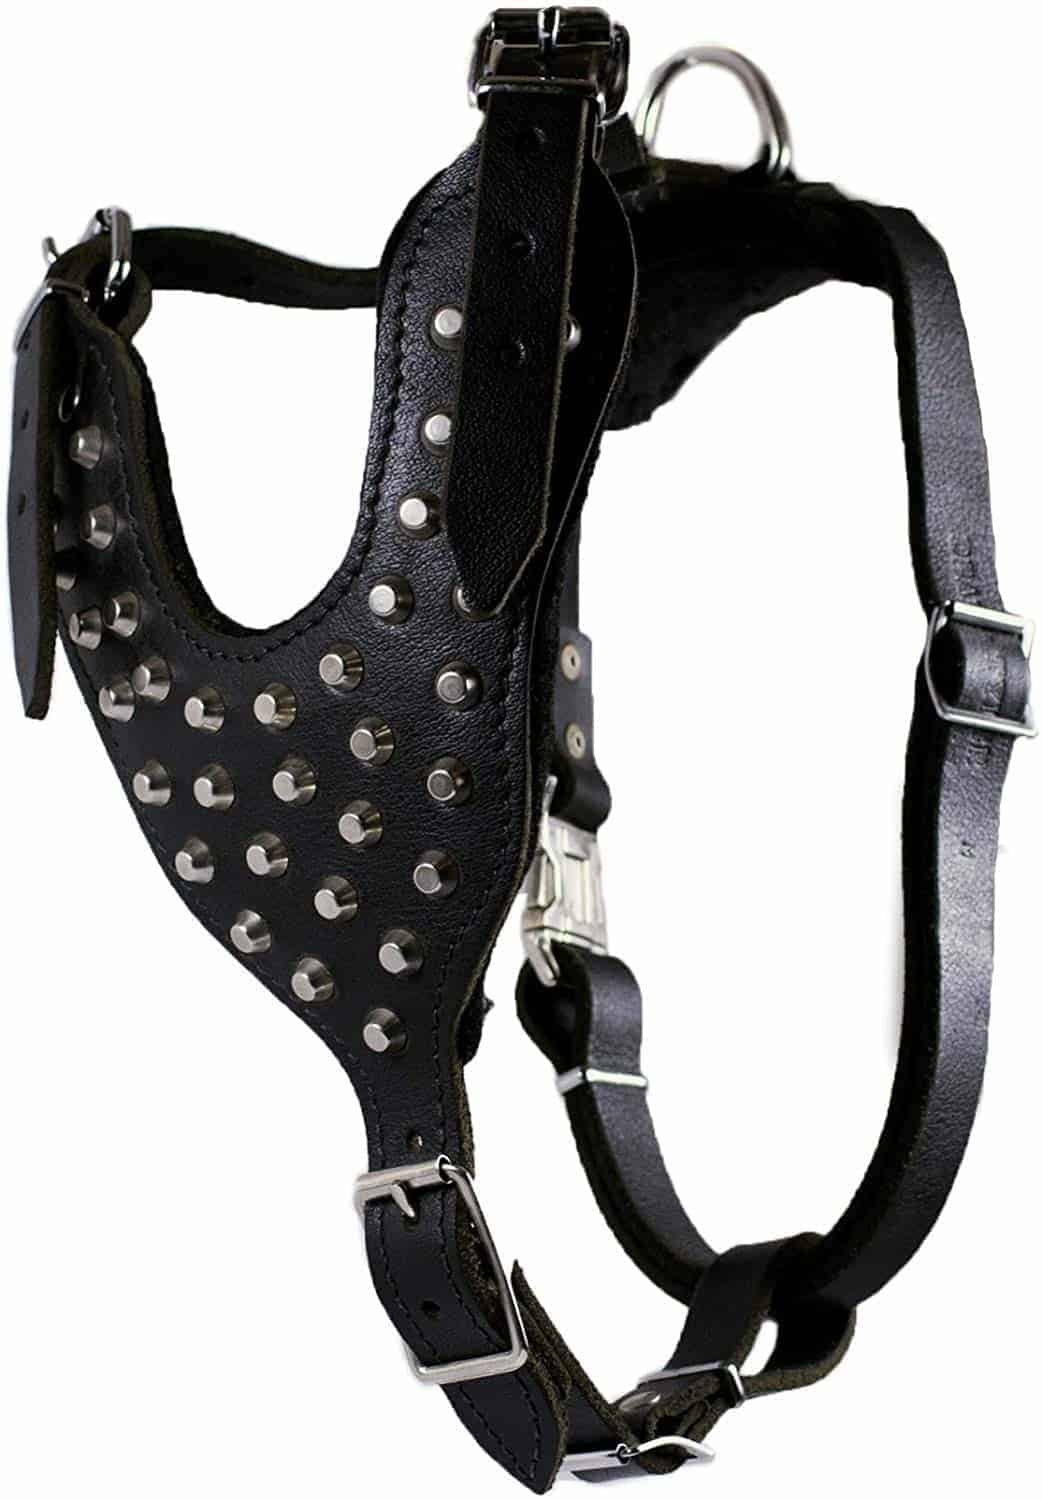 Leather Dog Harness uk